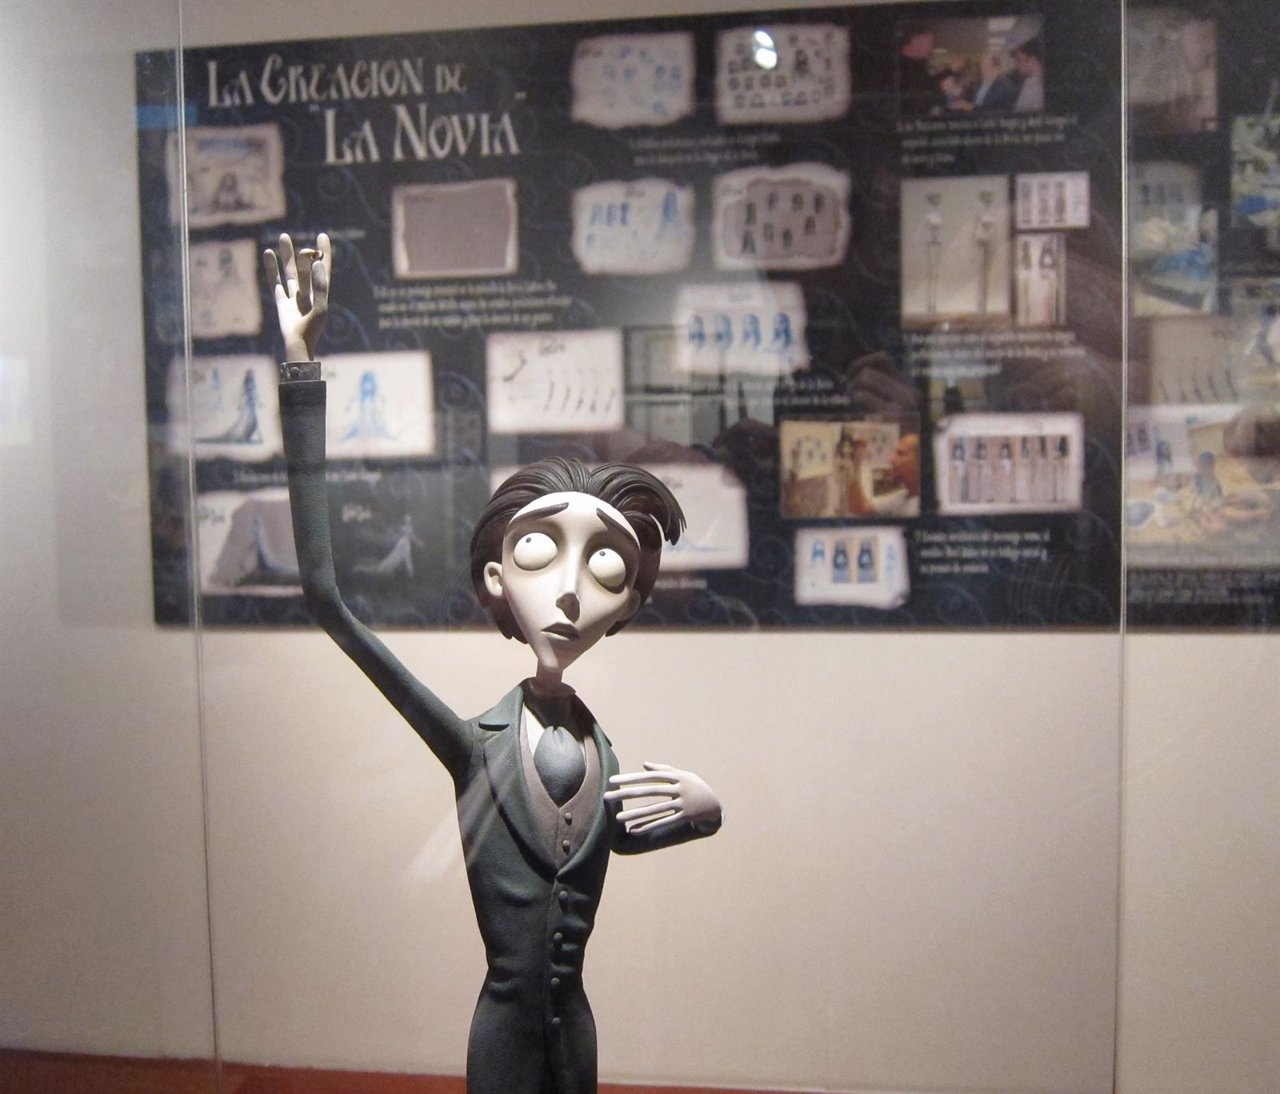 Héroes animados, exposición en Santiago sobre creación de personajes